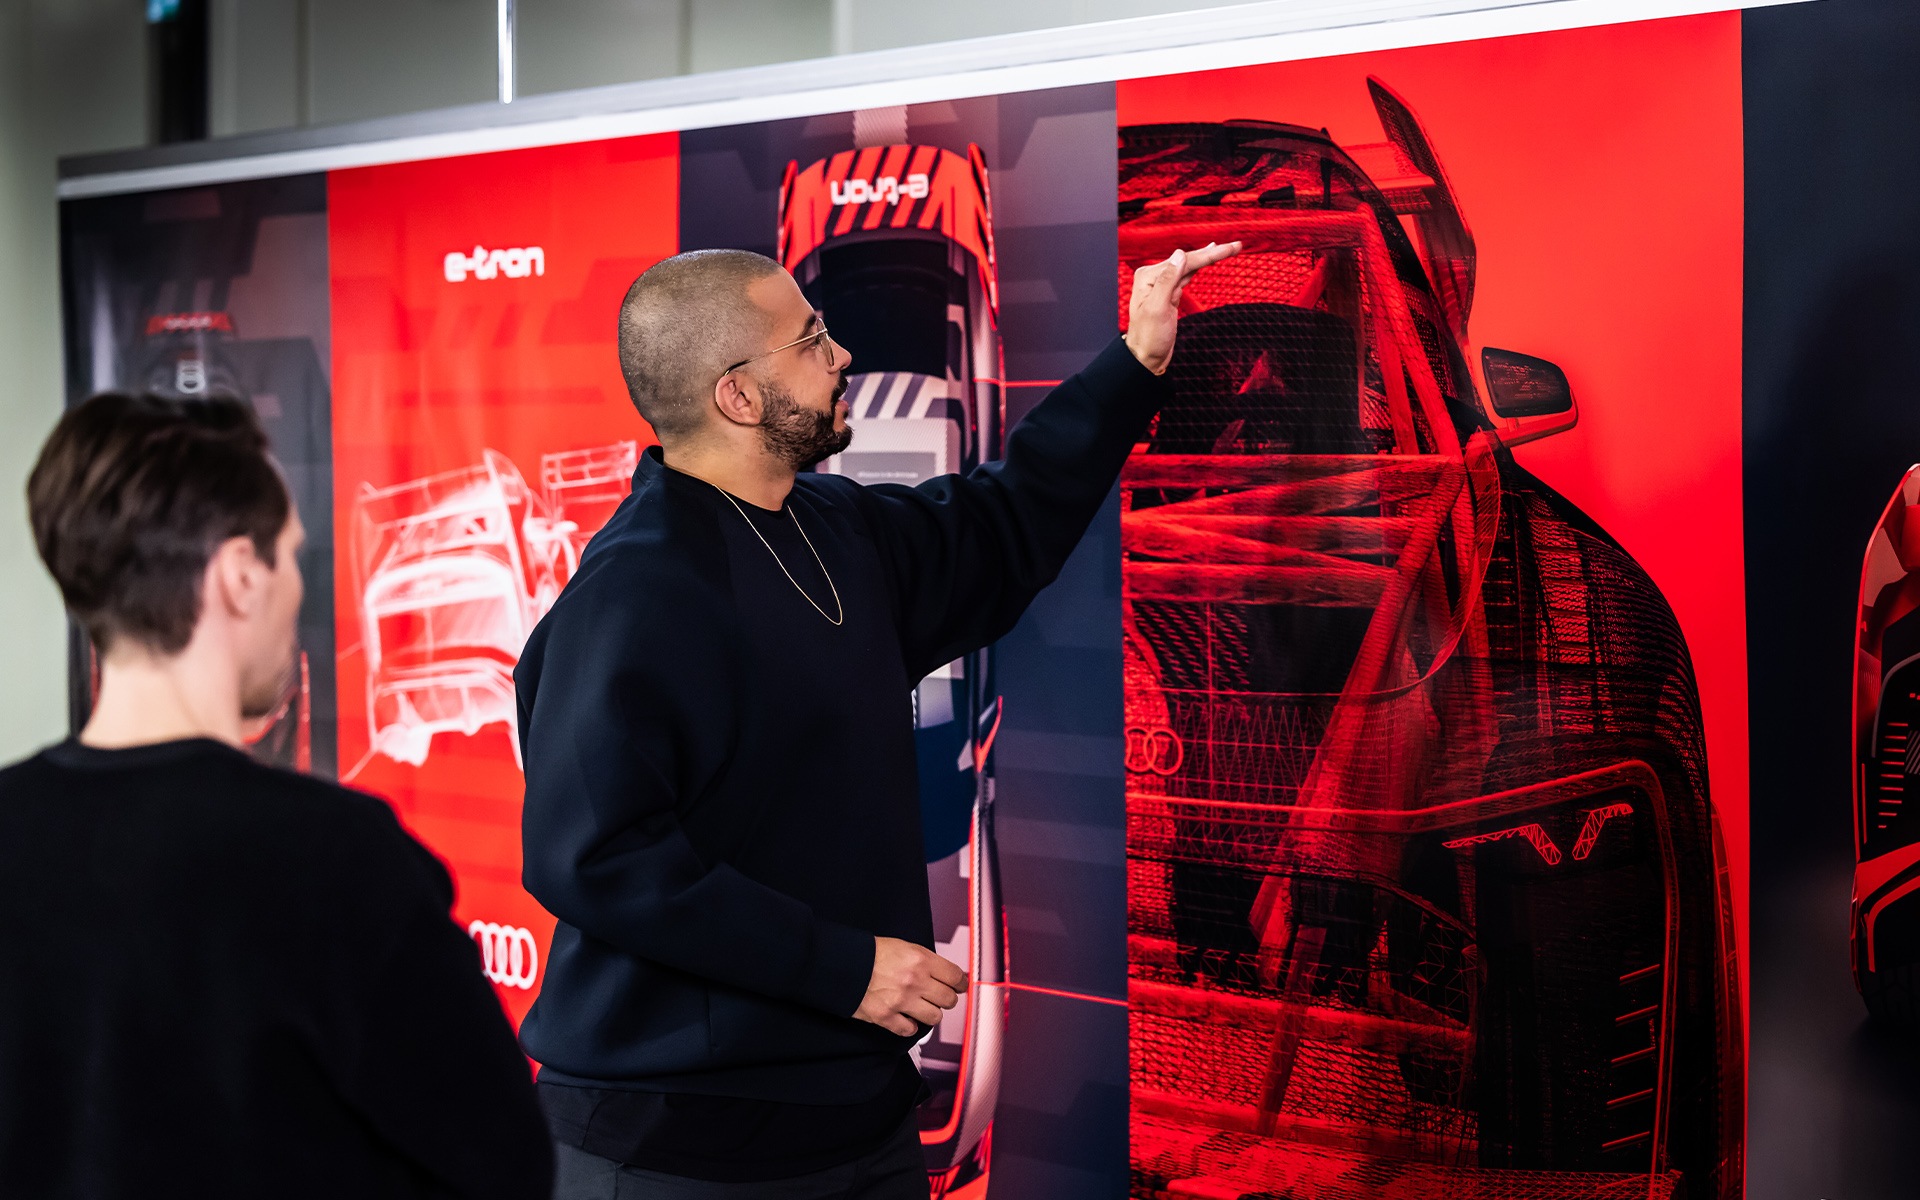 Oblikovalec Marco dos Santos s pomočjo skice pojasnjuje prevleko dirkalnika Audi S1 Hoonitron.